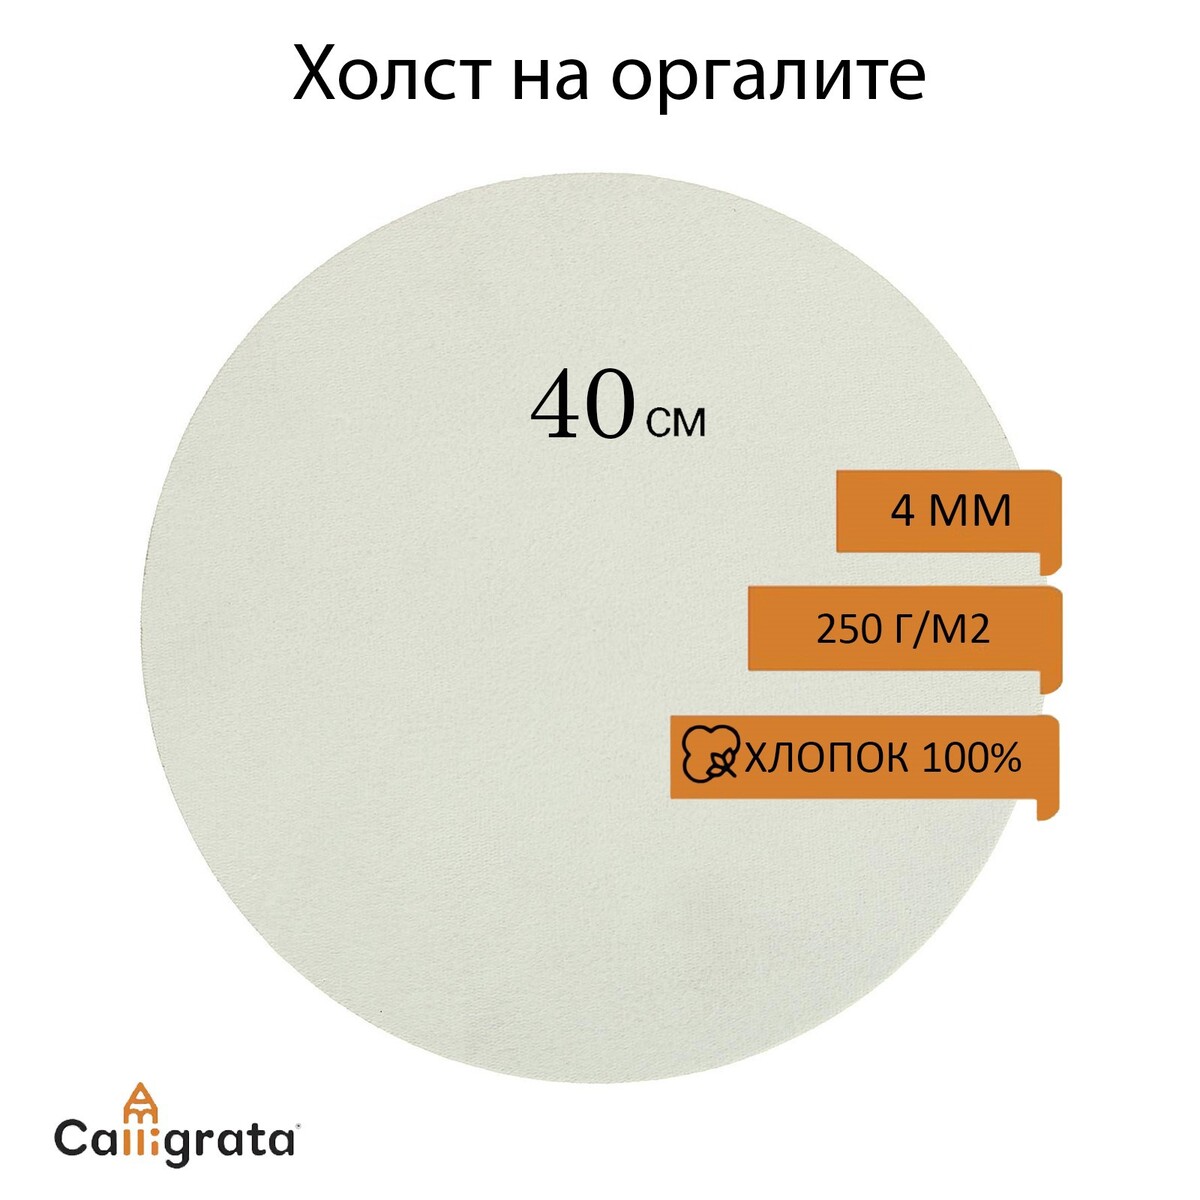 Холст круглый на оргалите 4мм, d-40 хлопок 100% акриловый грунт м/з 250г/м²